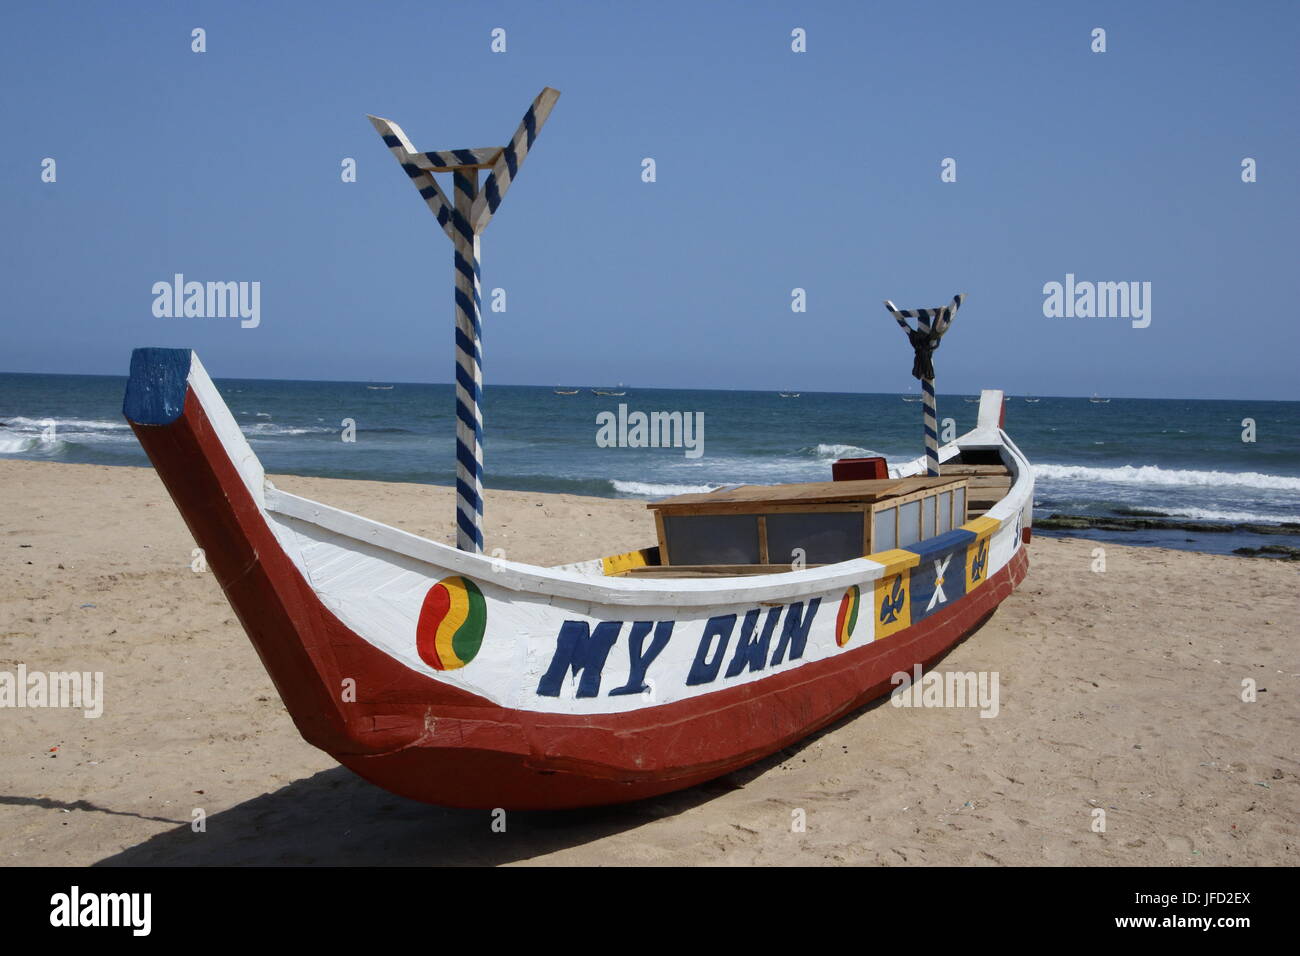 Fishing boat at Prampram beach Stock Photo